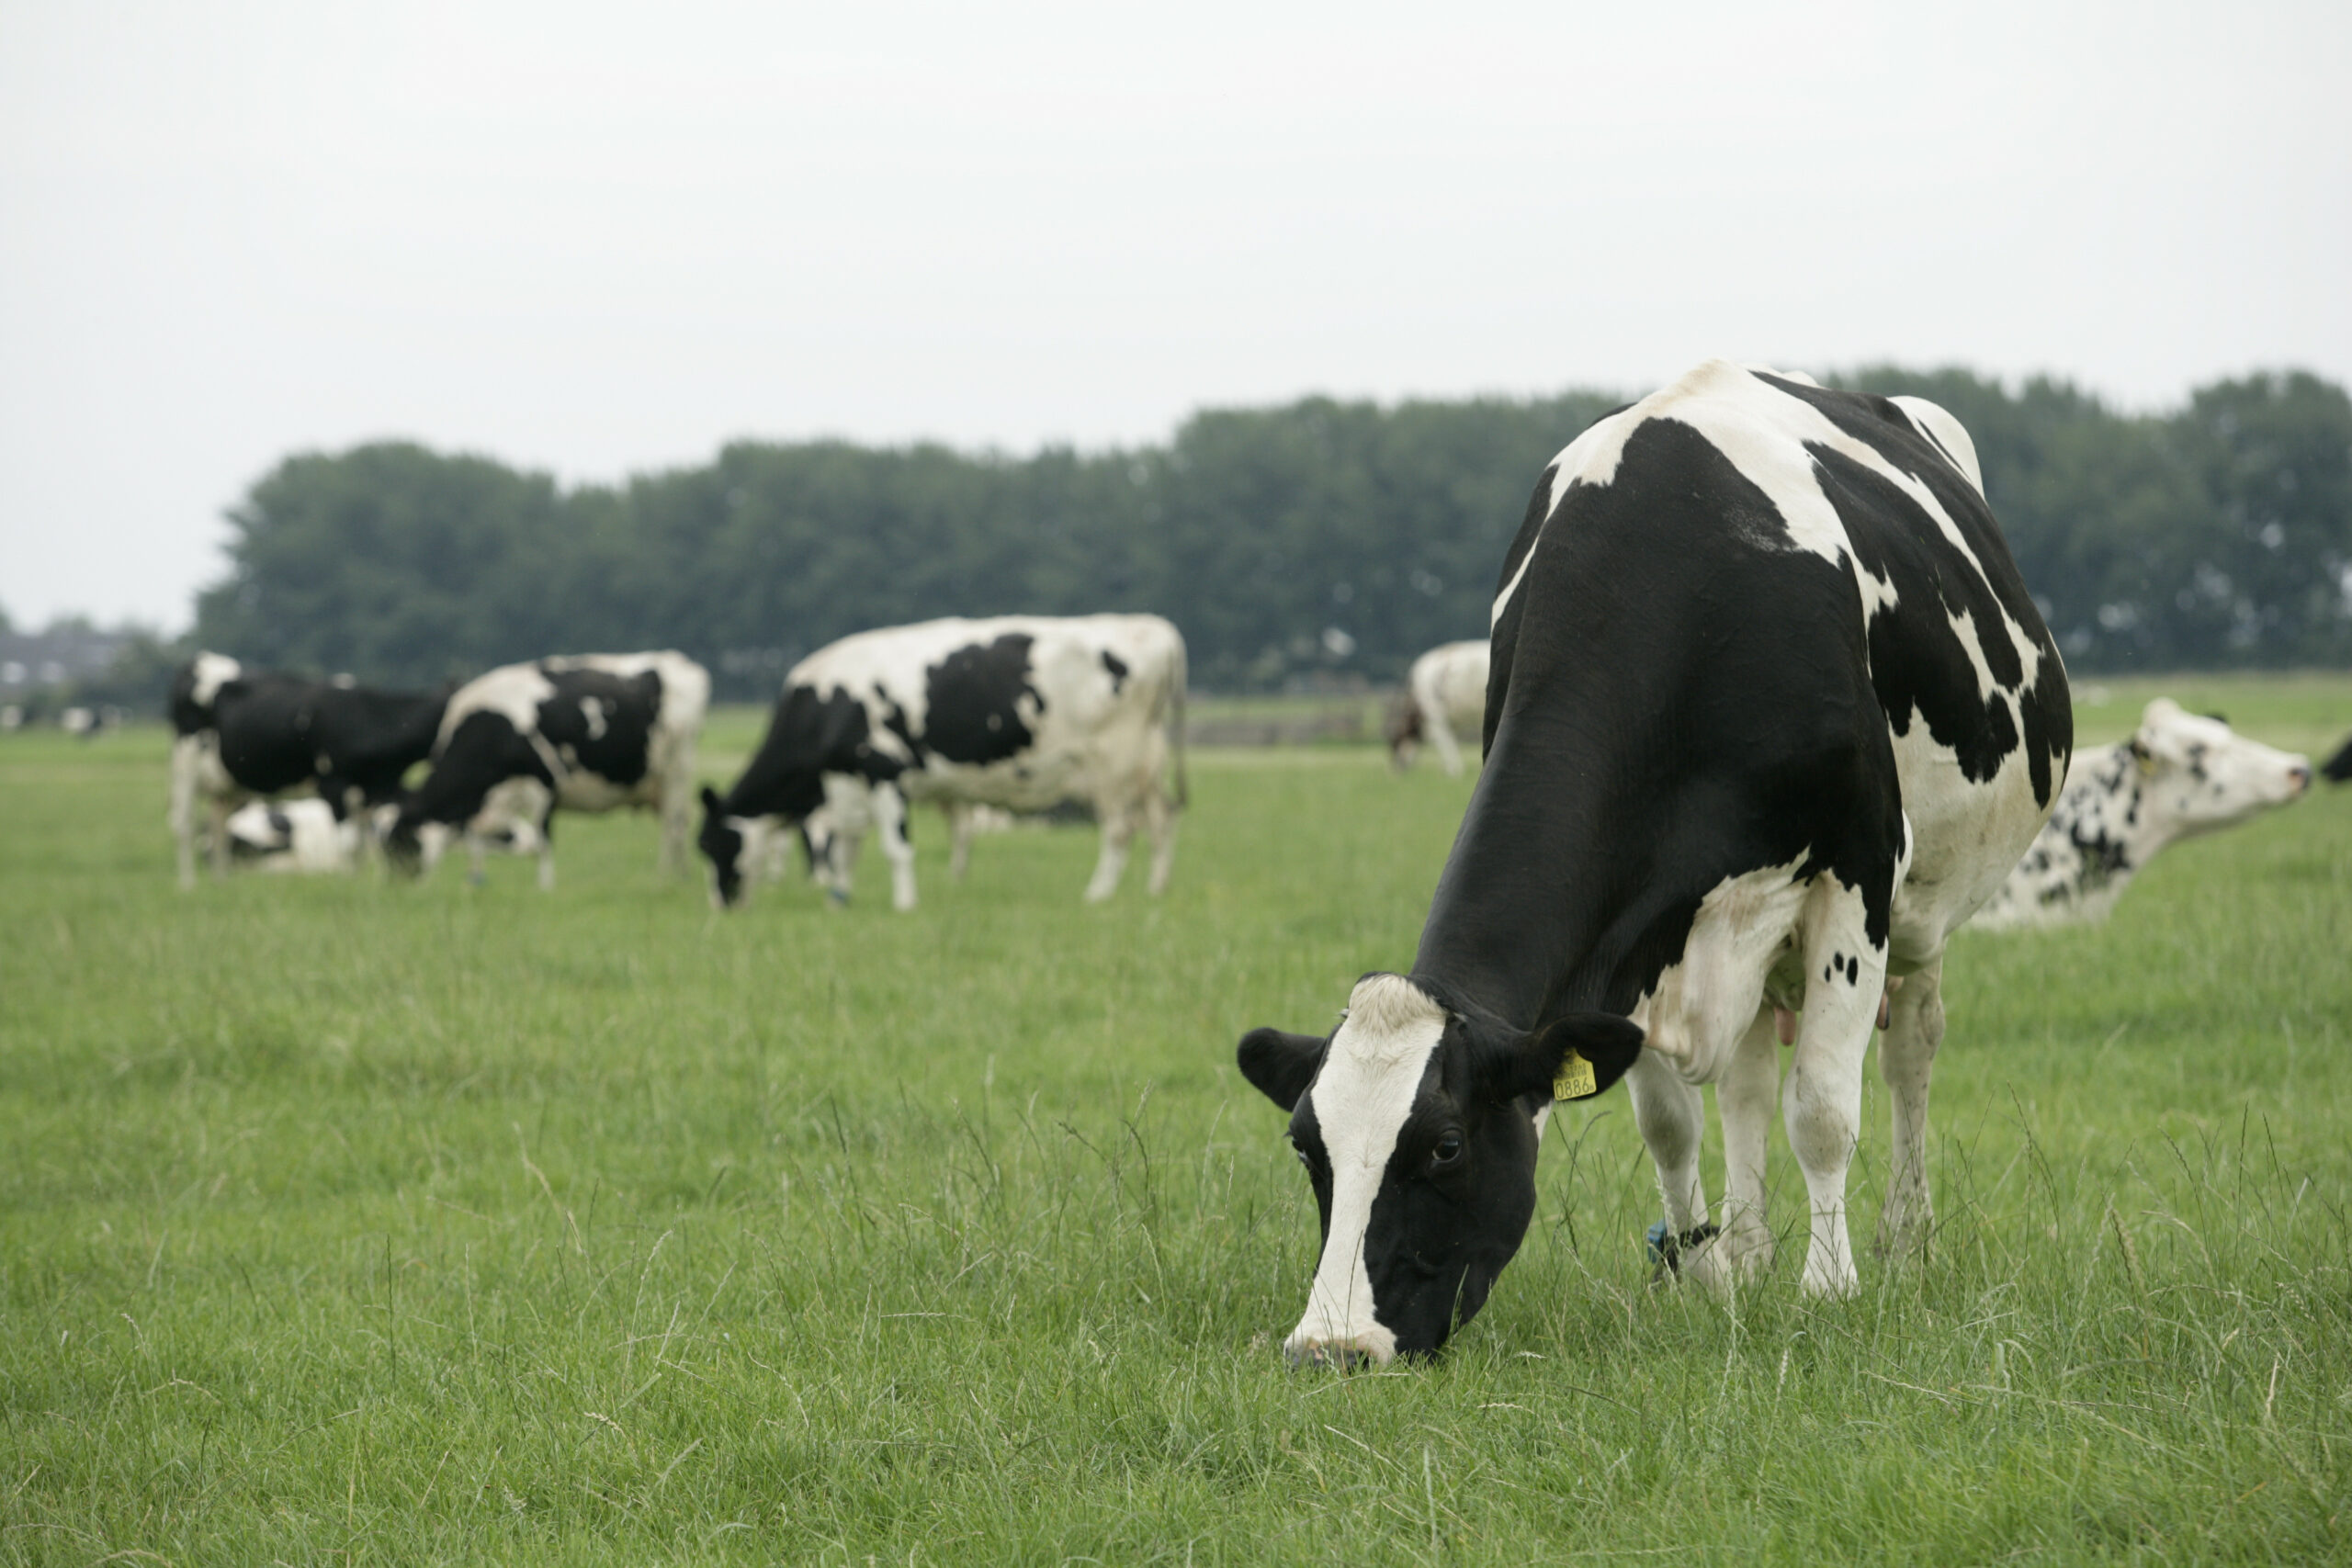 De komende jaren moet de uitstoot van broeikassen omlaag. Een langere levensduur van de koeien en rantsoenaanpassingen zijn daarvoor nodig.